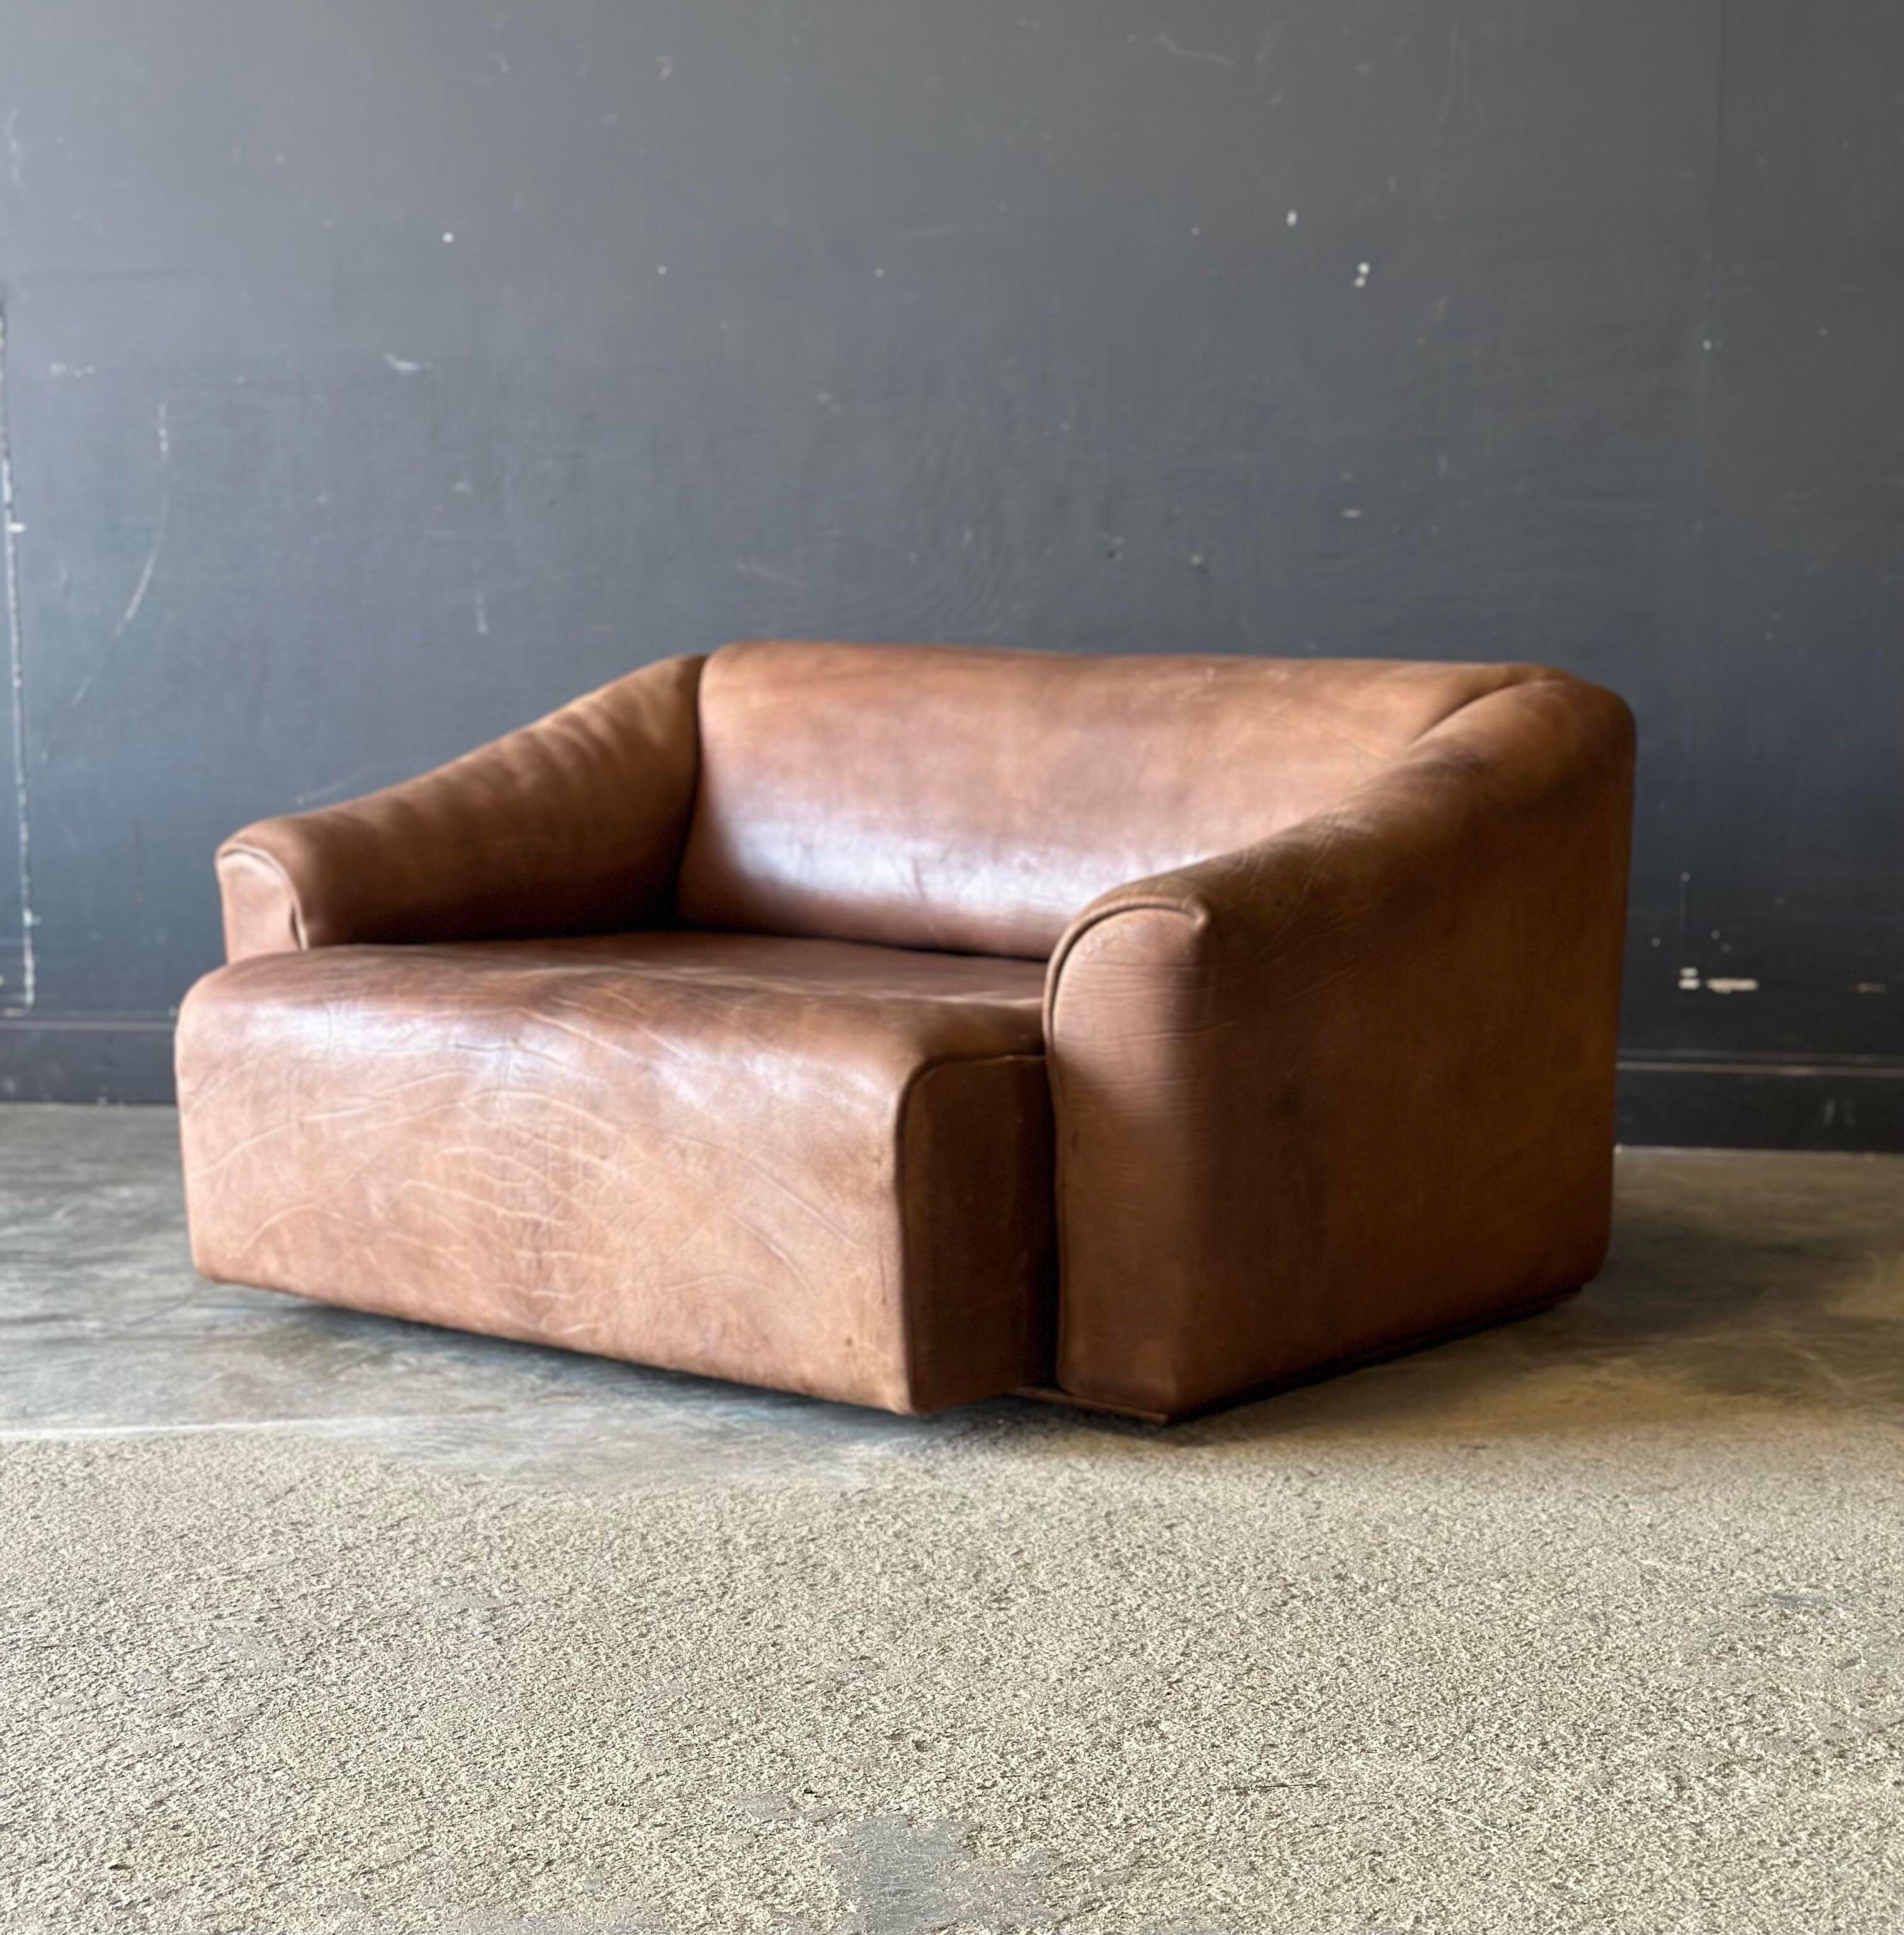 Ein Schweizer De Sede Ds-47 Liegesofa. Er ist eine Ikone des modernen Designs der Jahrhundertmitte und ist mit rohem, unbeschichtetem Büffelleder bezogen. Das extrem weiche und bequeme Sofa ist ausziehbar und lässt sich verstellen.